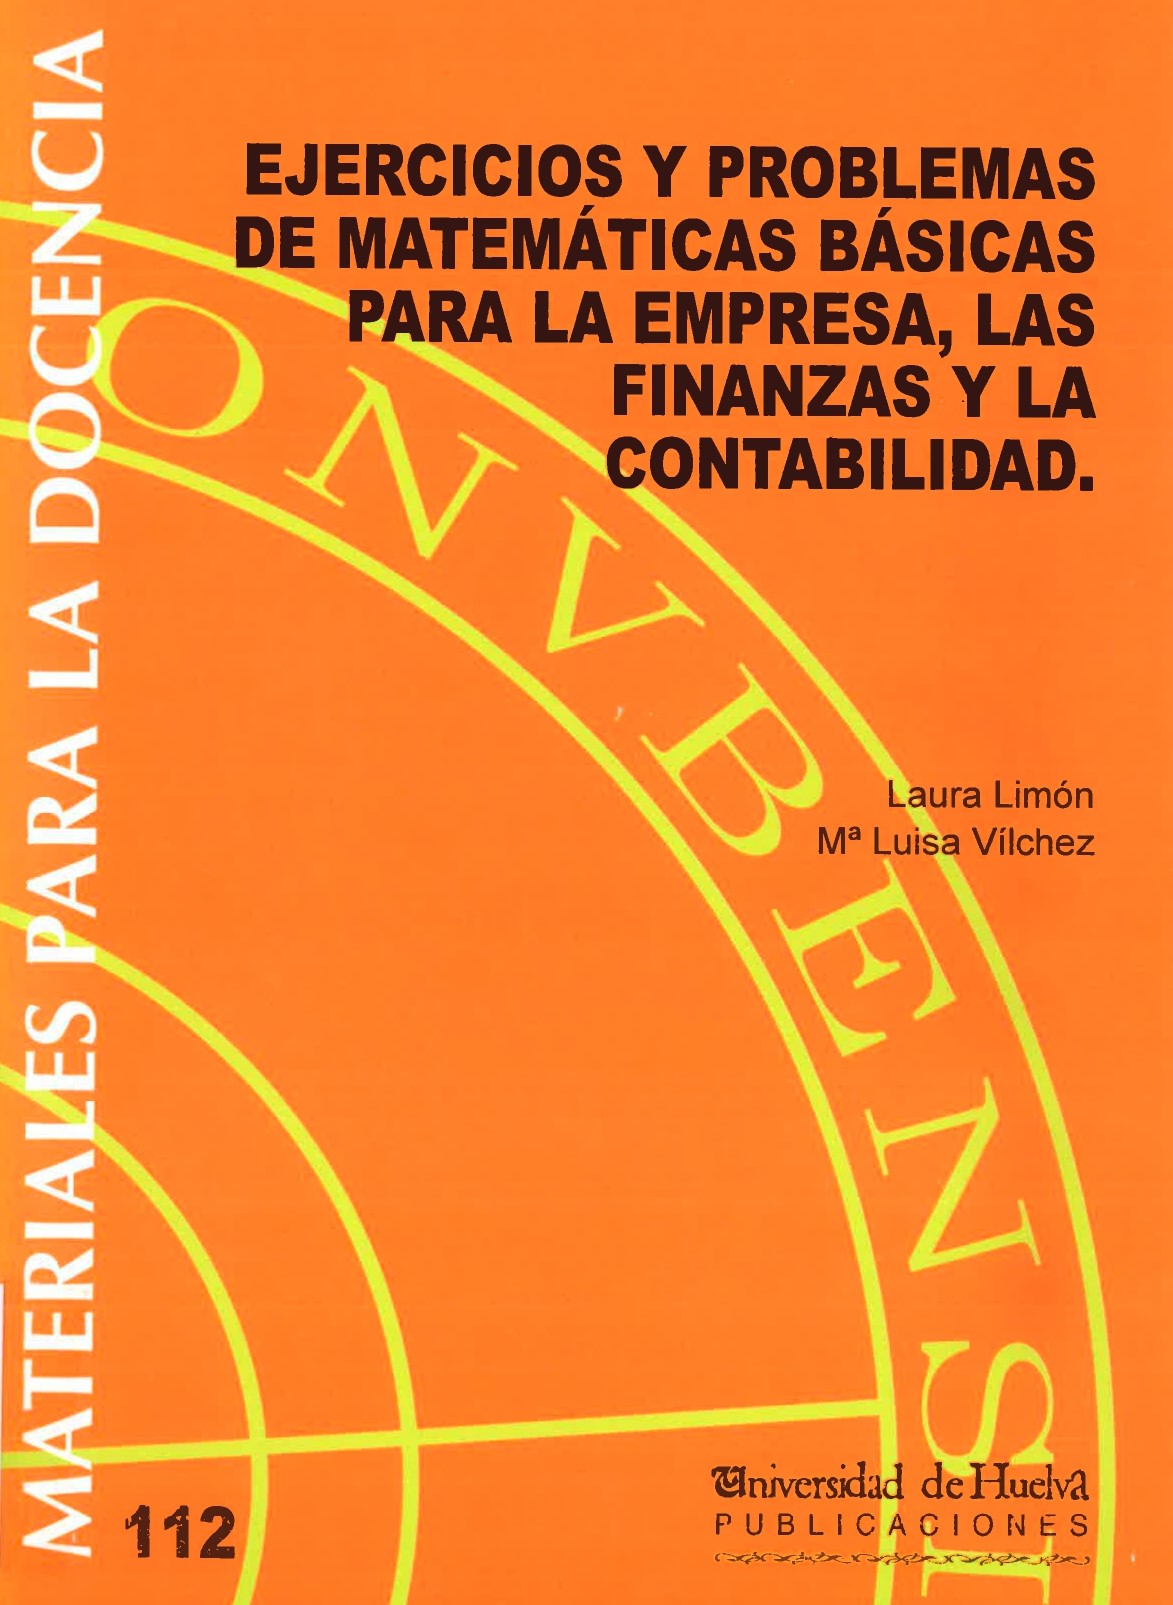 Imagen de portada del libro Ejercicios y Problemas de Matemáticas Básicas para la Empresa, las Finanzas y la Contabilidad